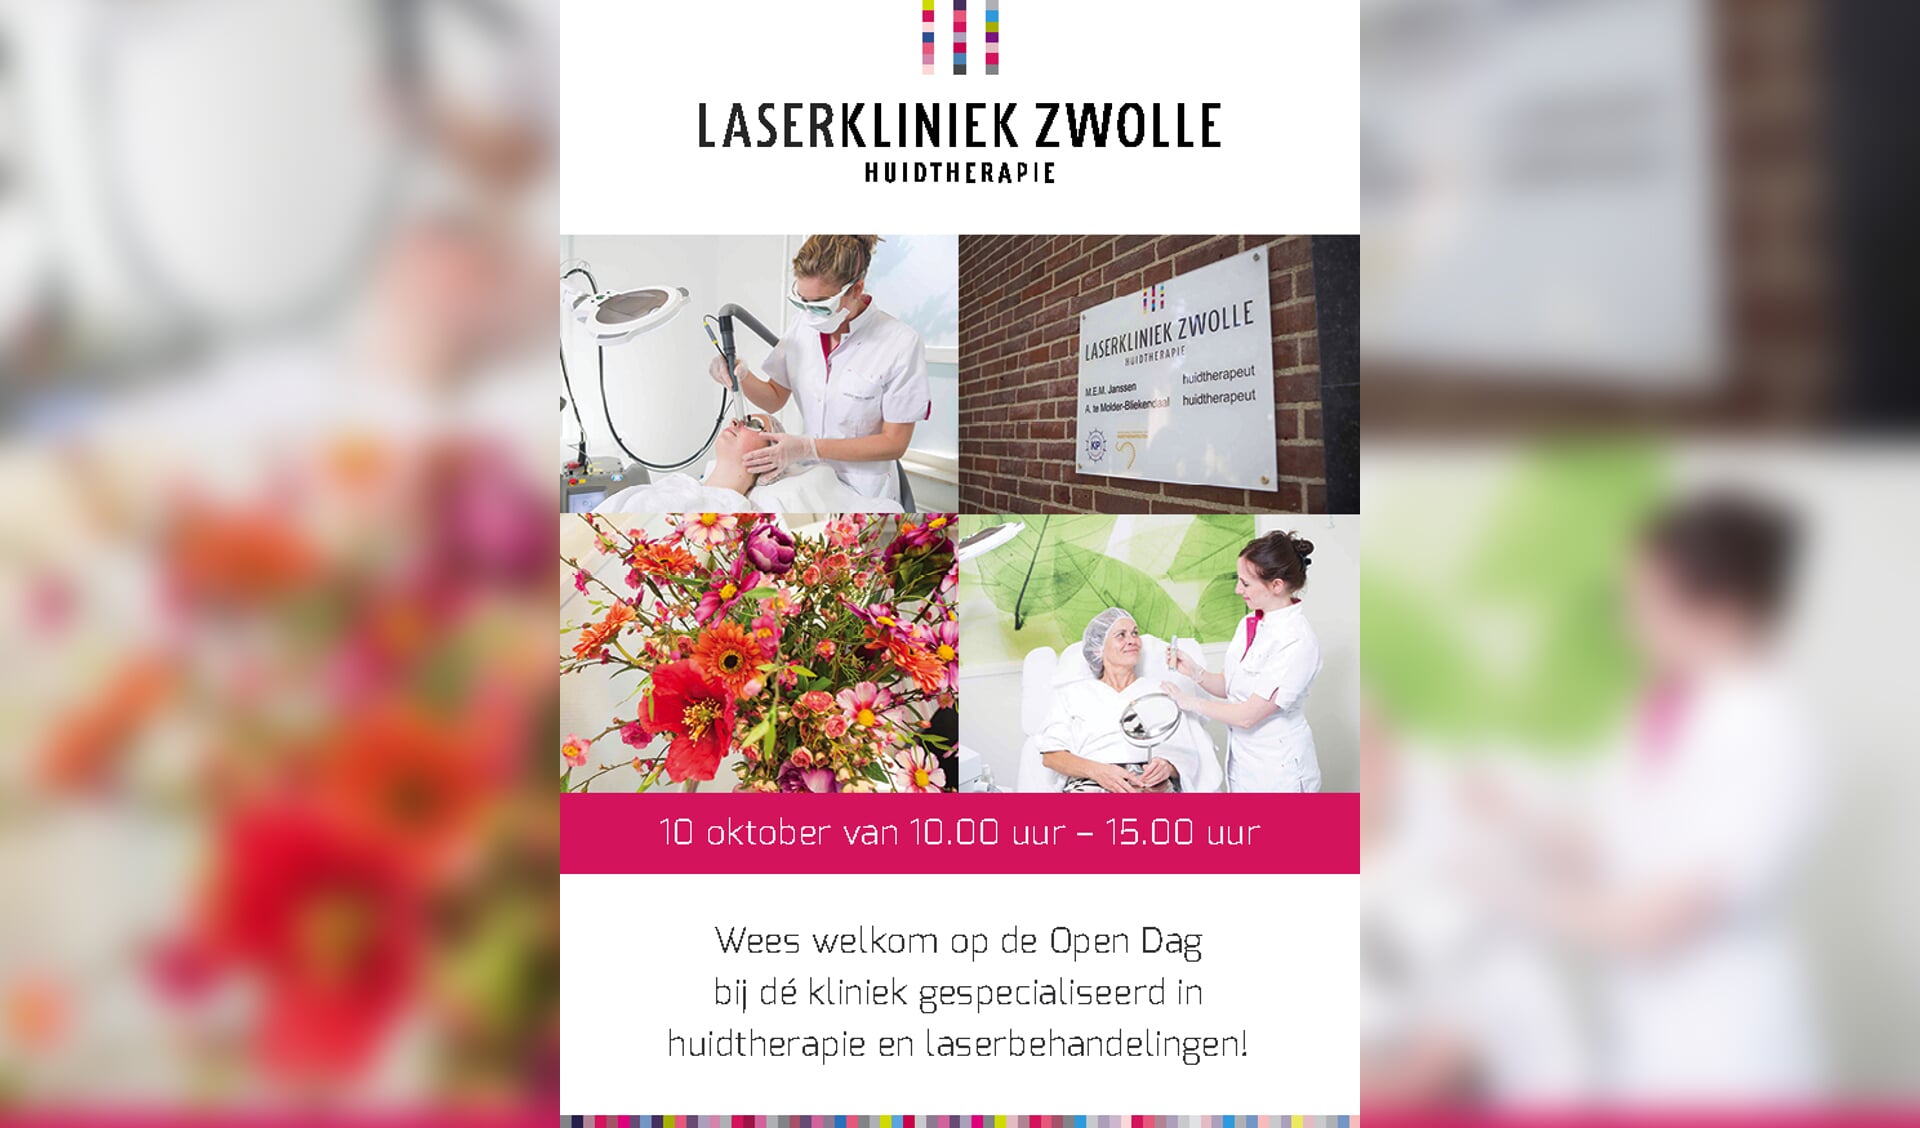 Wees welkom op de open dag bij Laserkliniek Zwolle-Huidtherapie - Zaterdag 10 oktober a.s. van 10.00 -15.00 uur